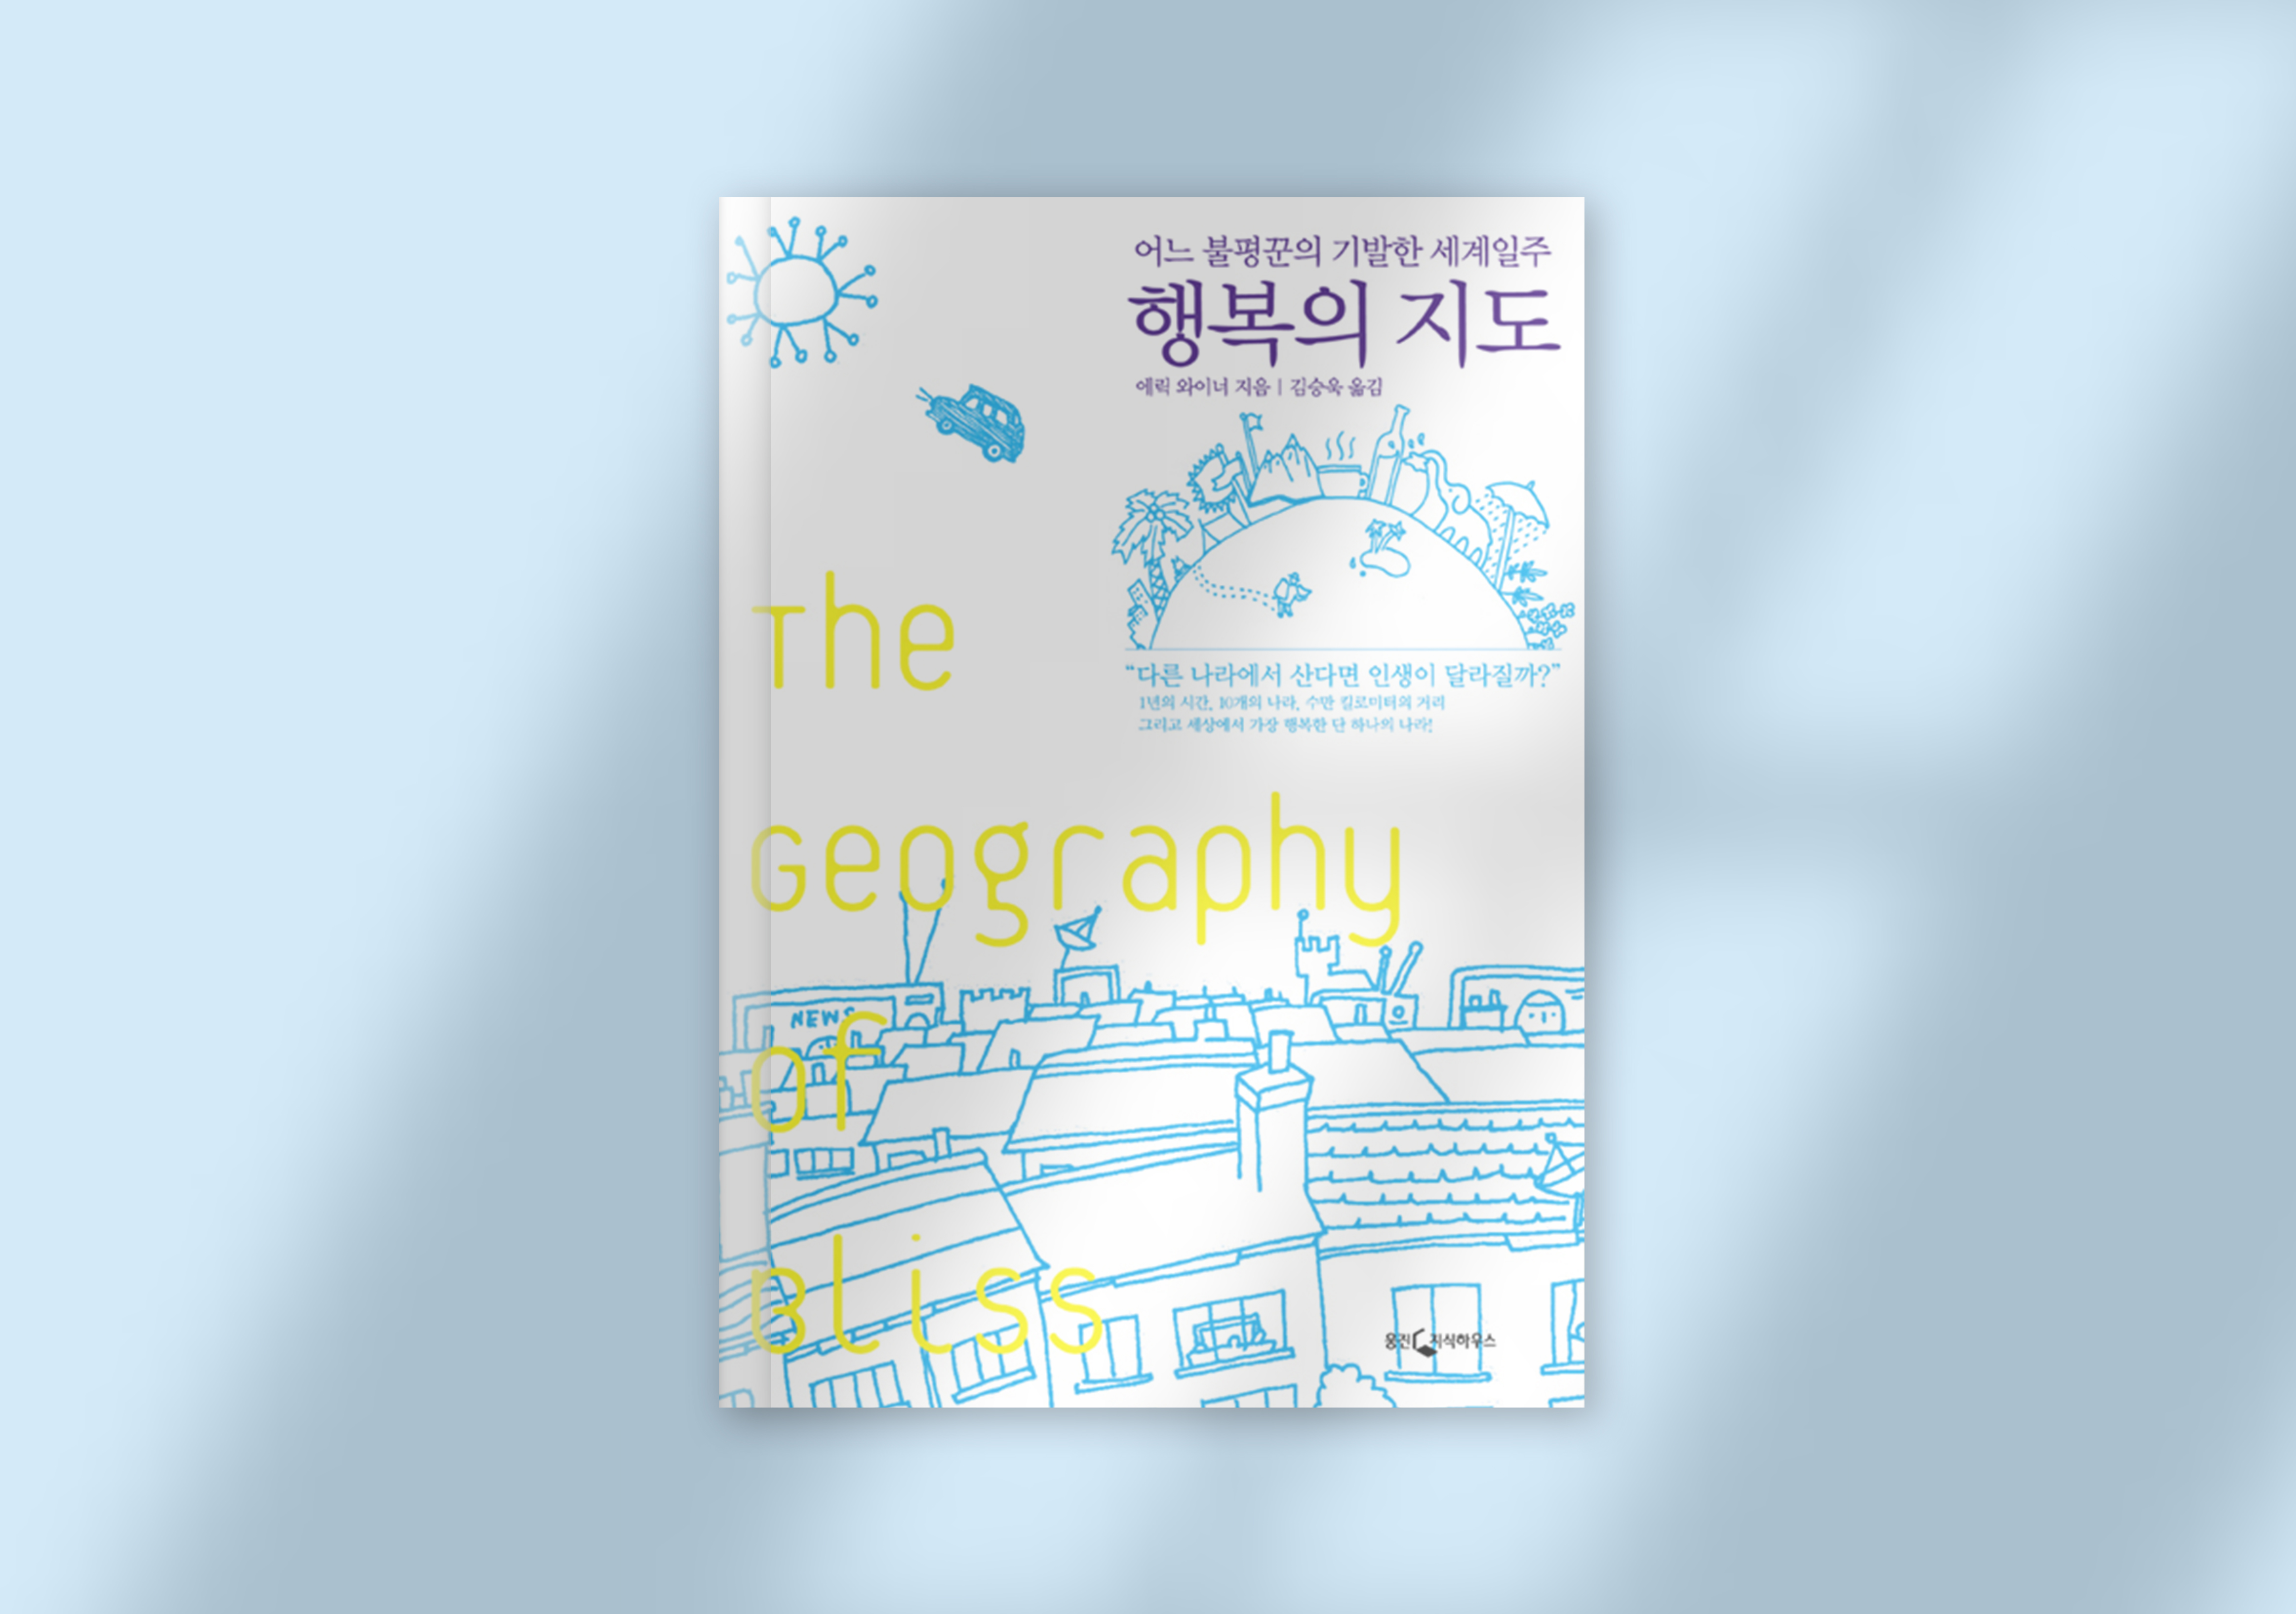 에릭 와이너, 『행복의 지도』, 김승욱 옮김, 웅진지식하우스, 2008